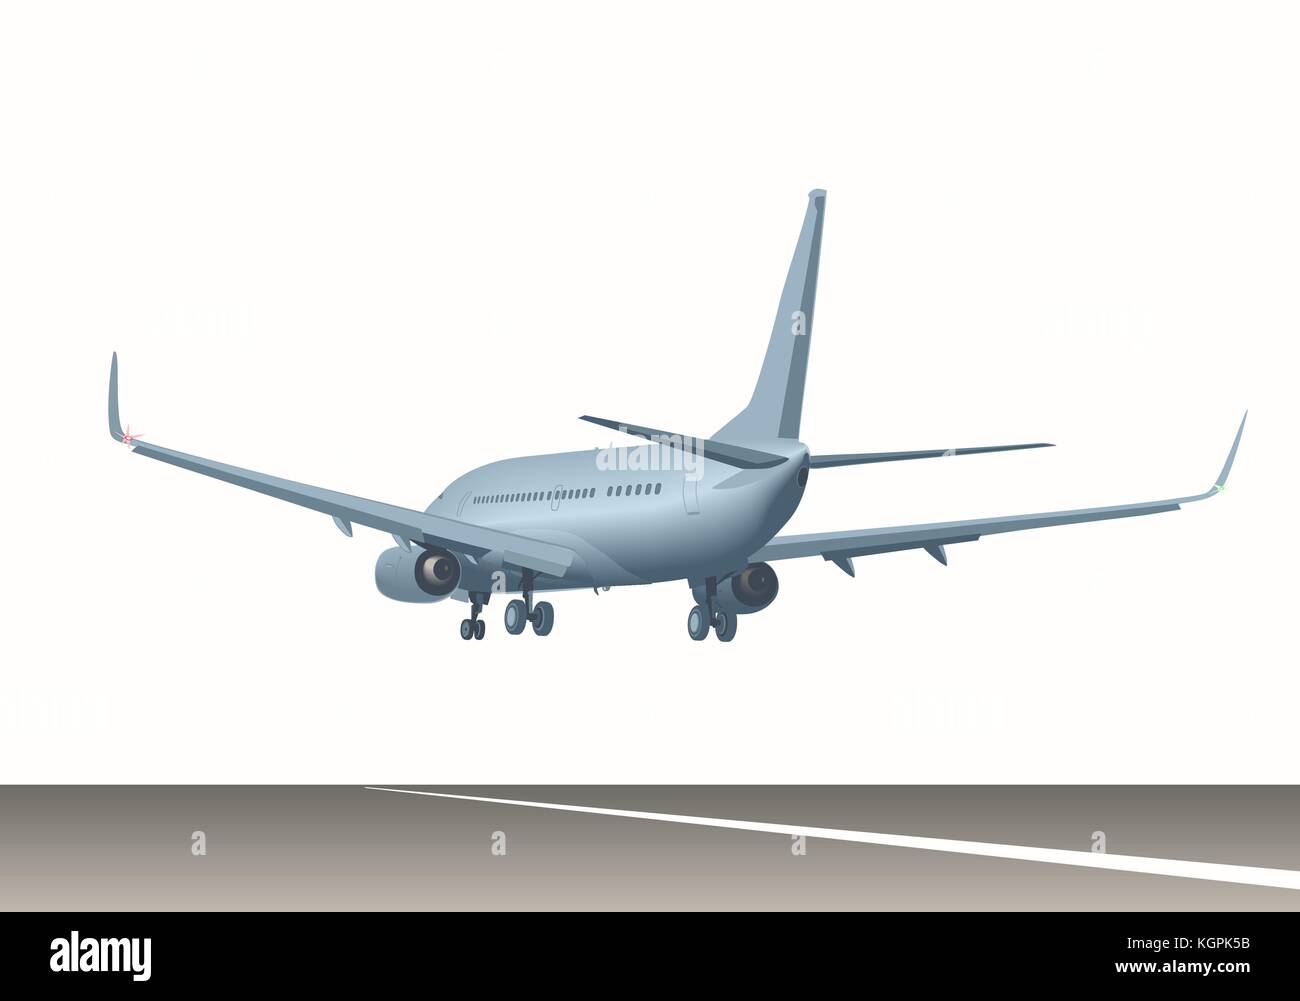 Airliner over runway. Stock Vector